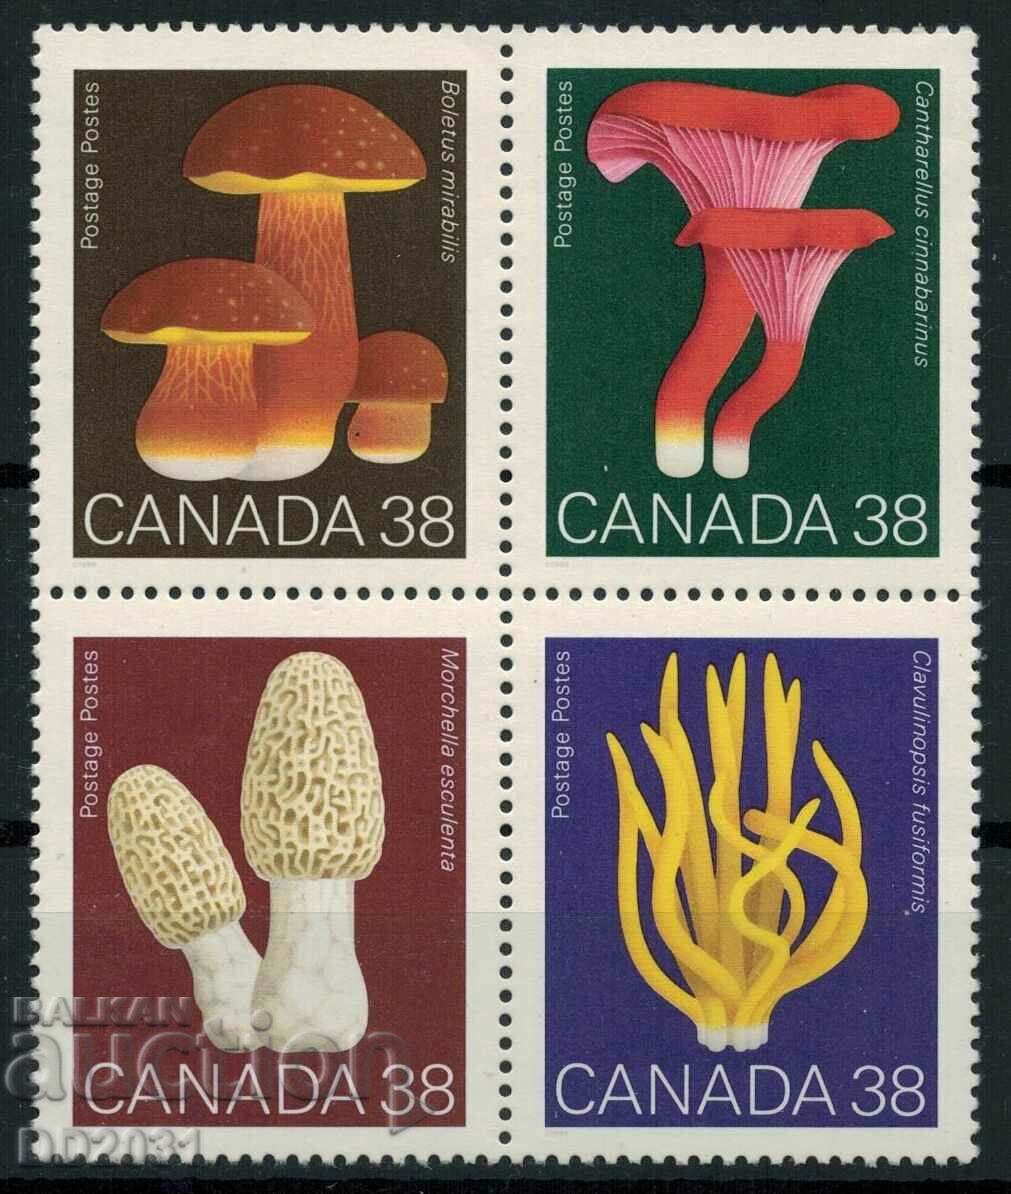 Canada 1989 - mushrooms MNH